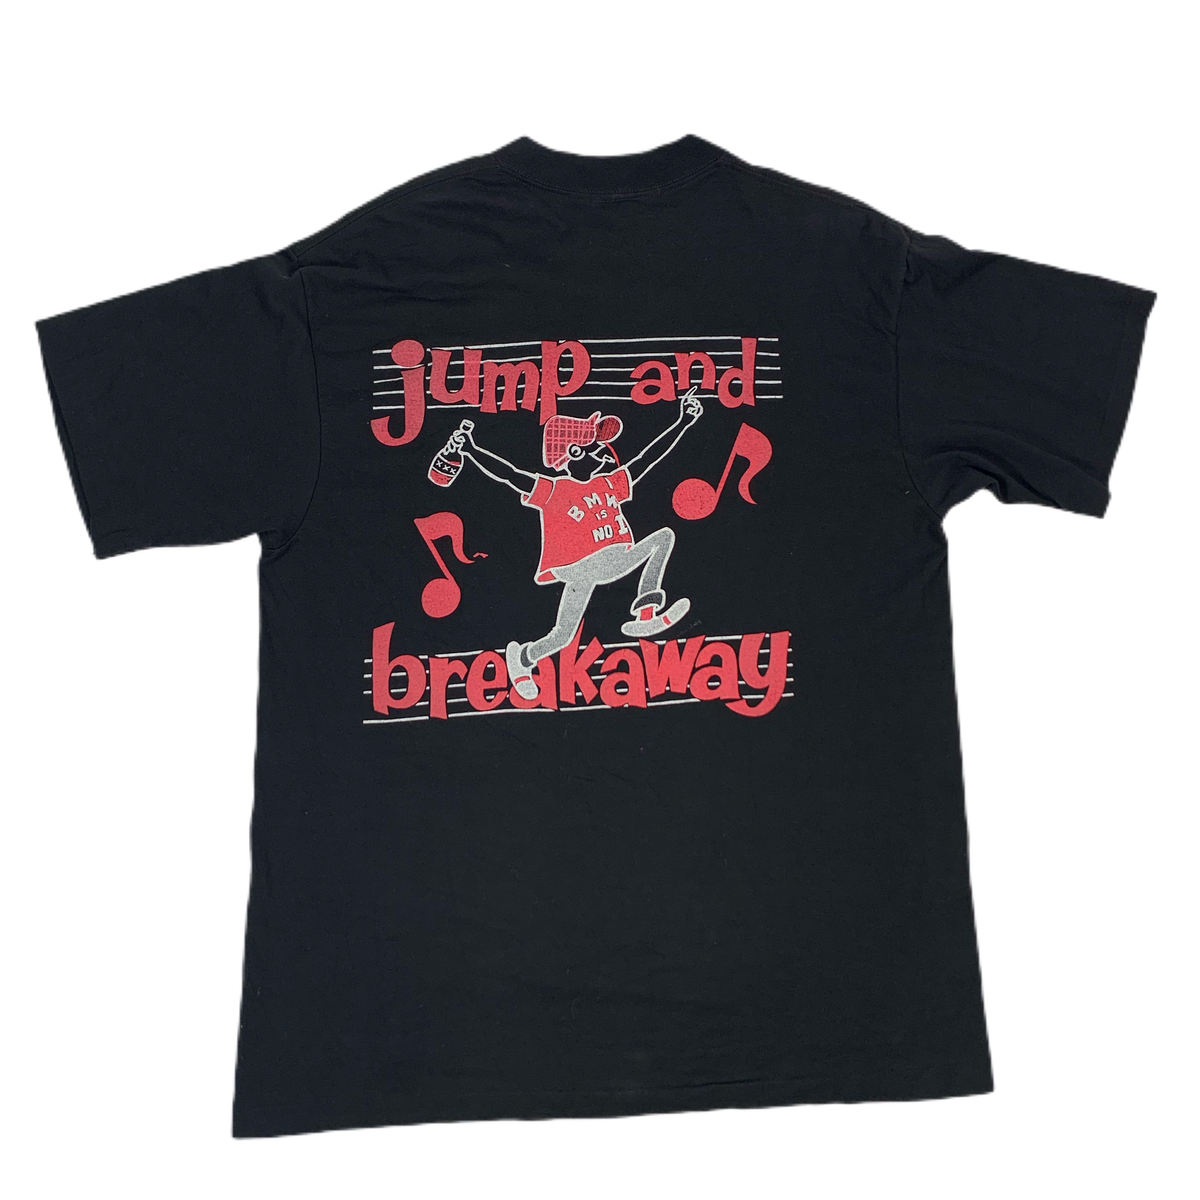 Vintage Shandileer “Jump And Breakaway” T-Shirt - jointcustodydc